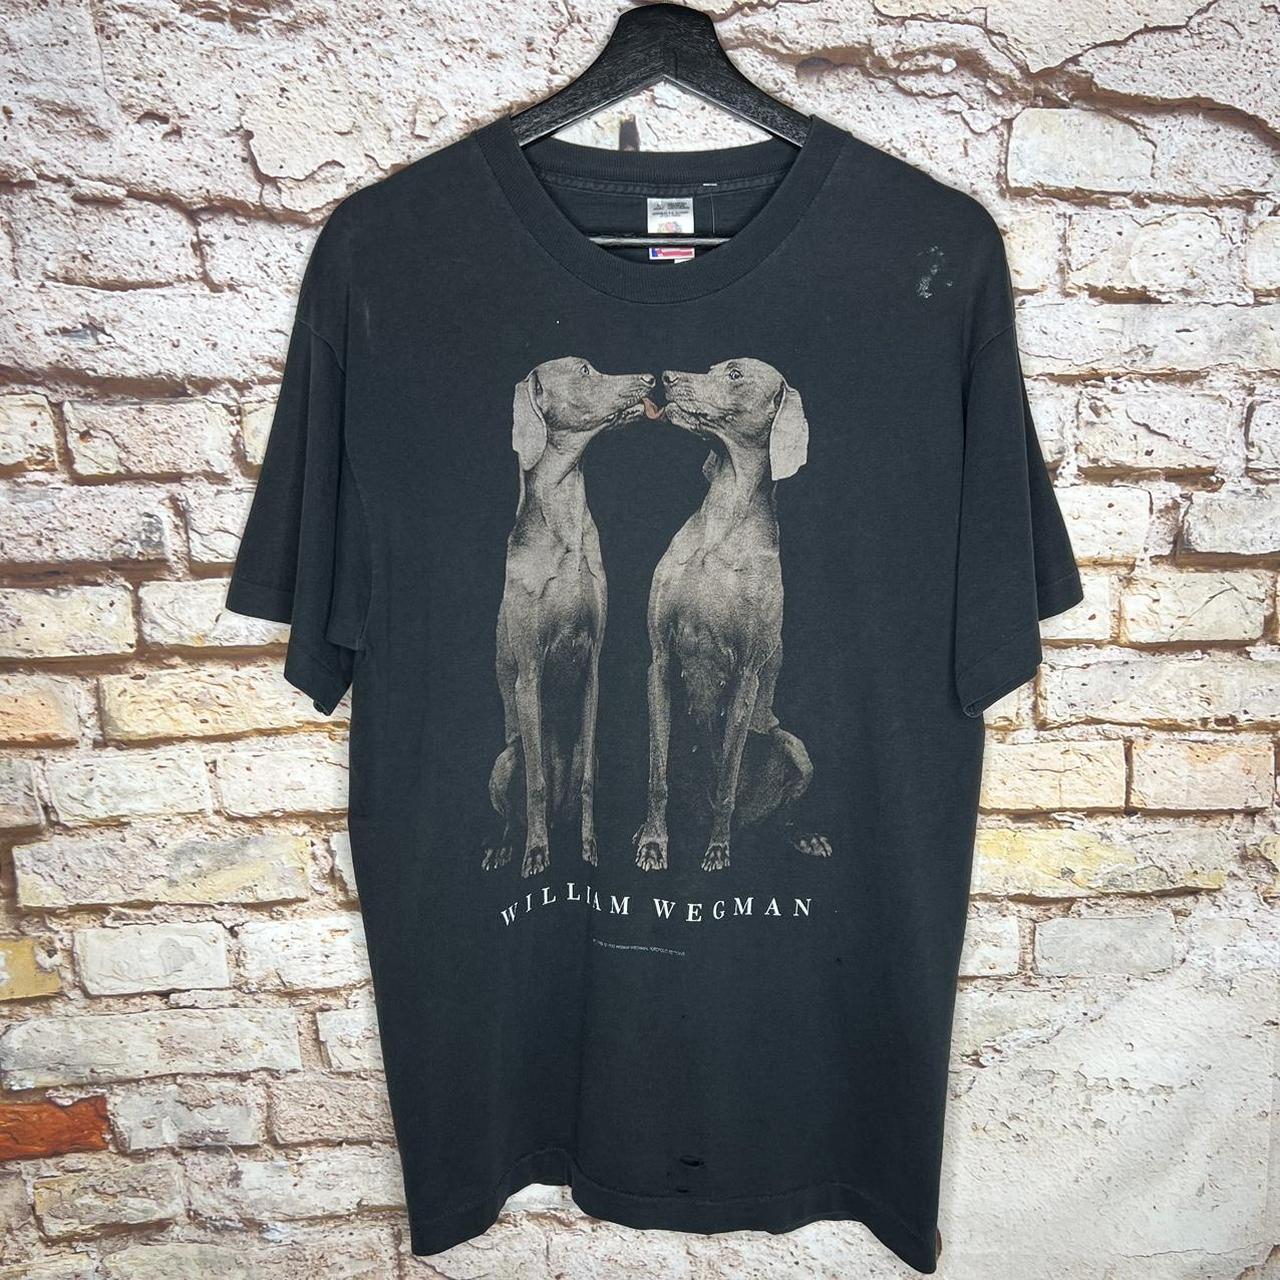 Vintage William Wegman 1993 Art Dogs T Shirt... - Depop